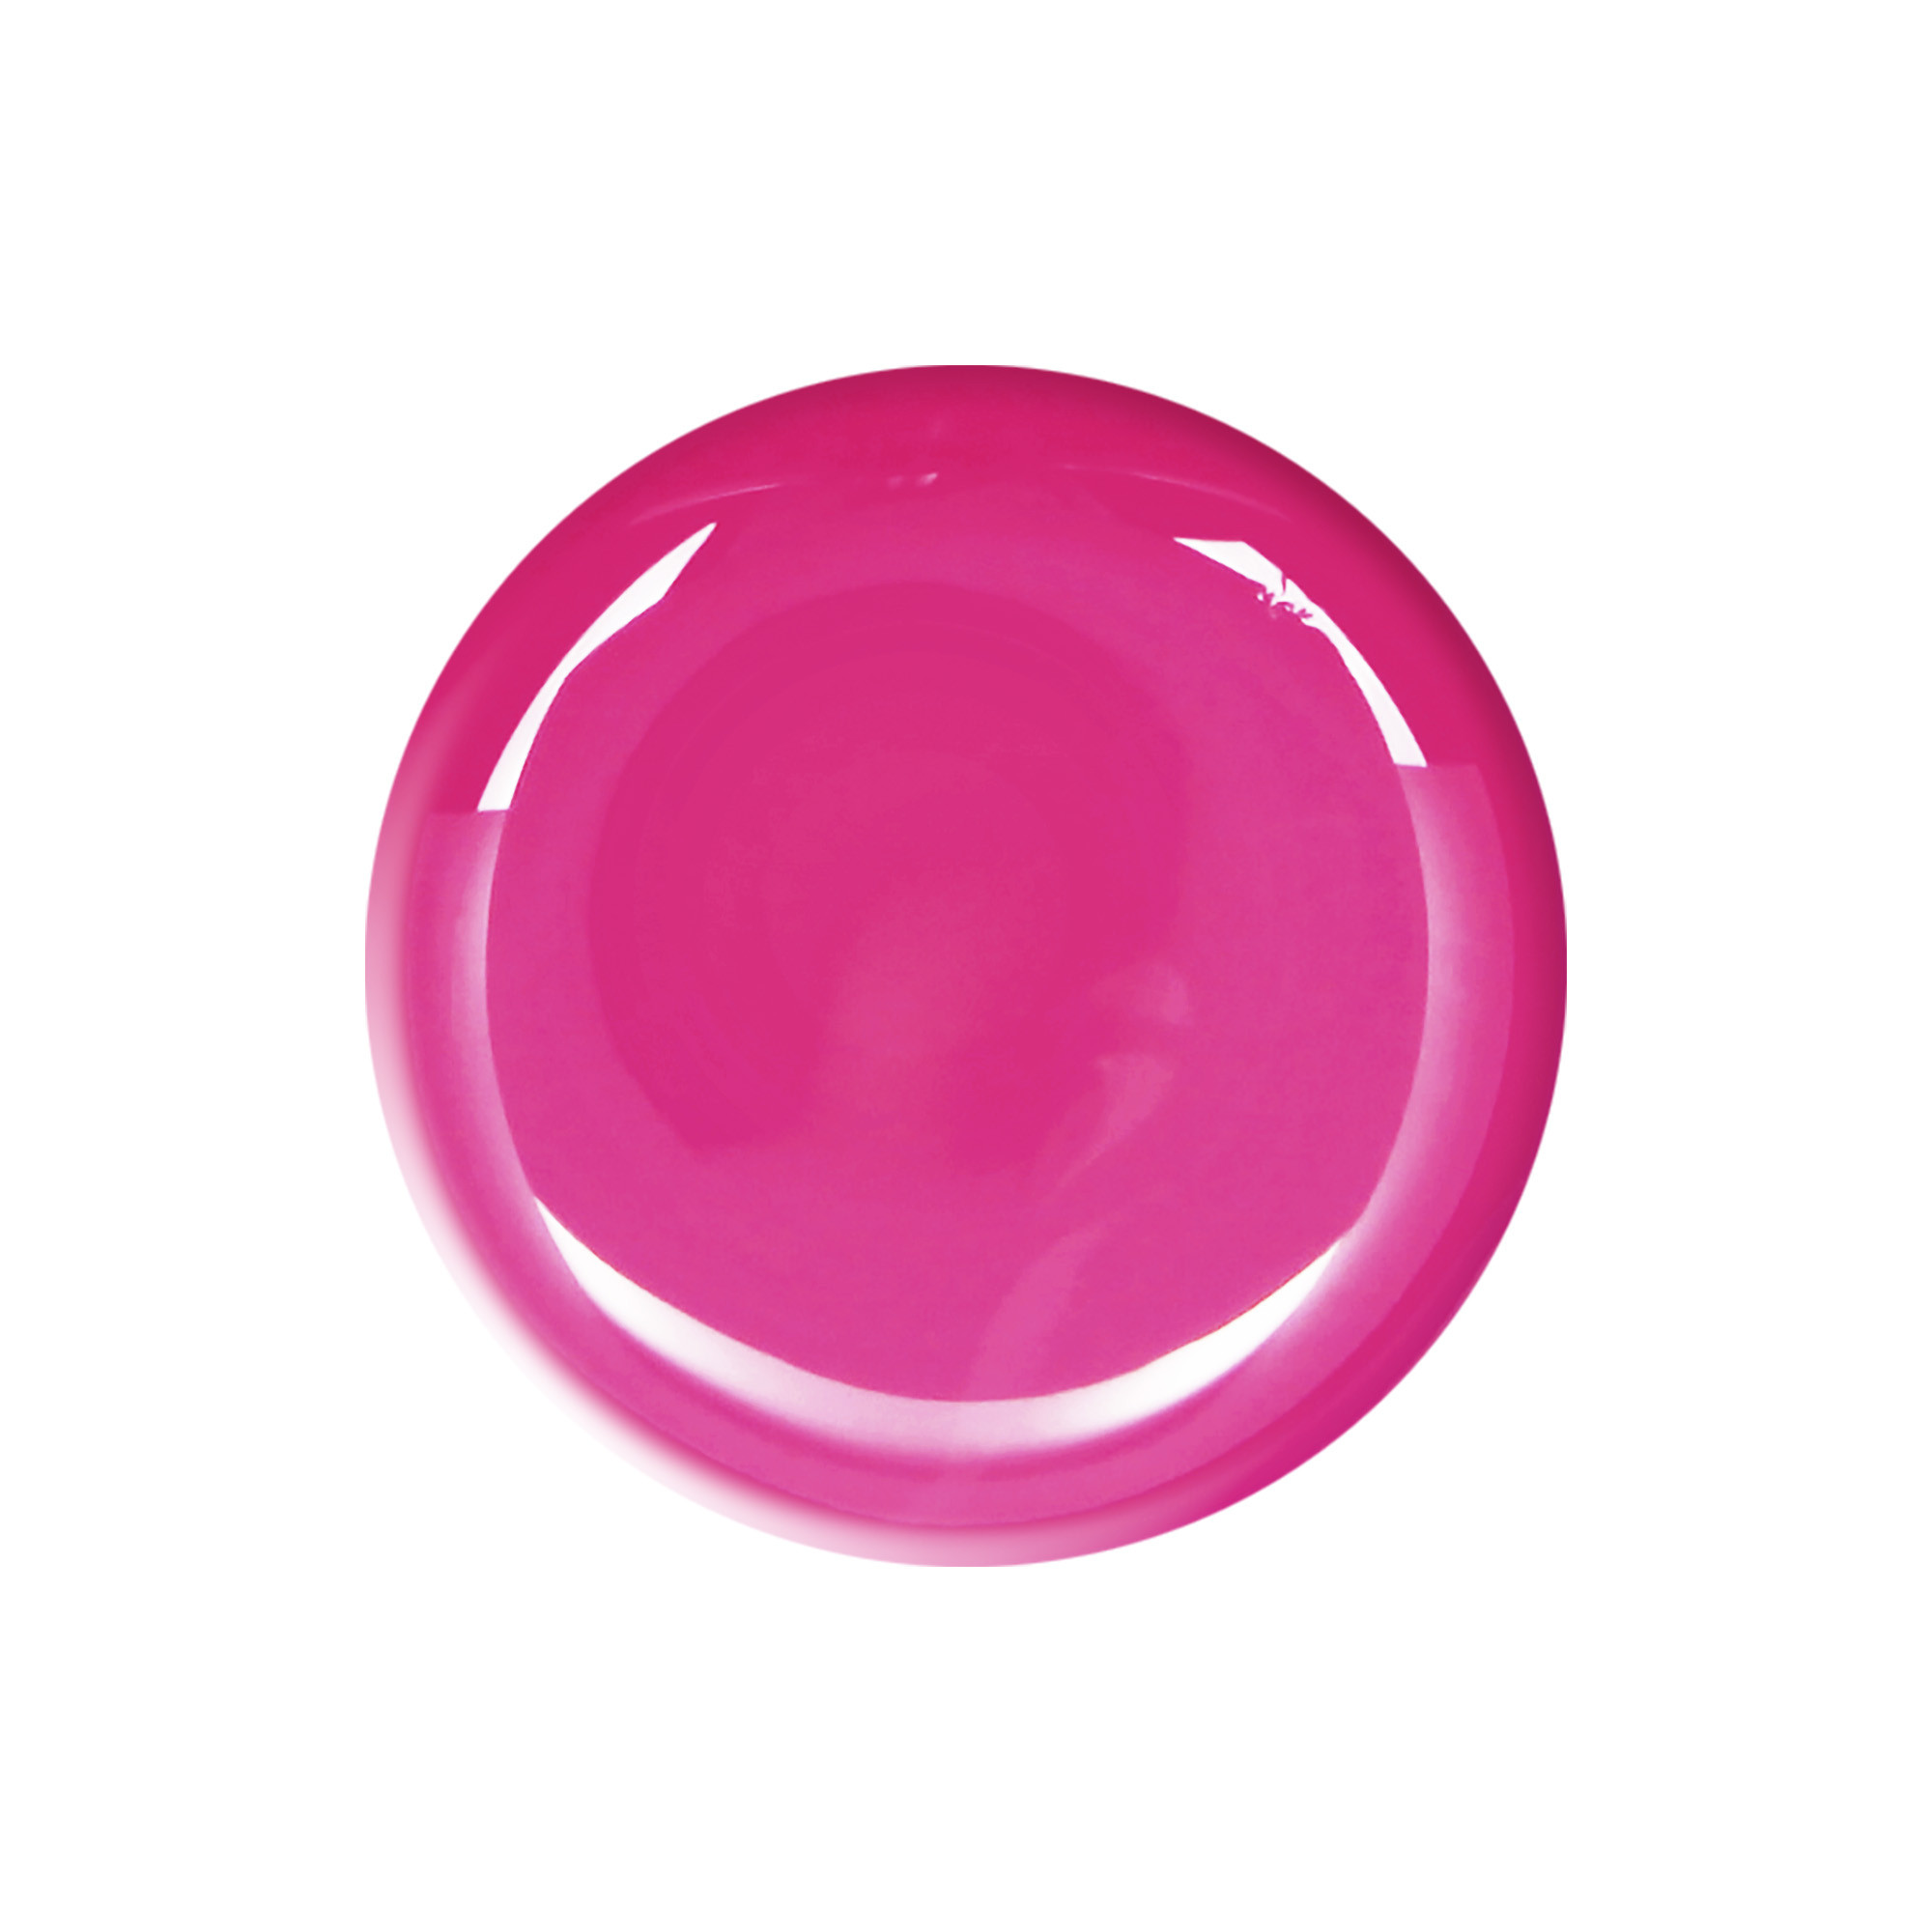 Nagellack Energy Pink Rosa 10 ml TNS